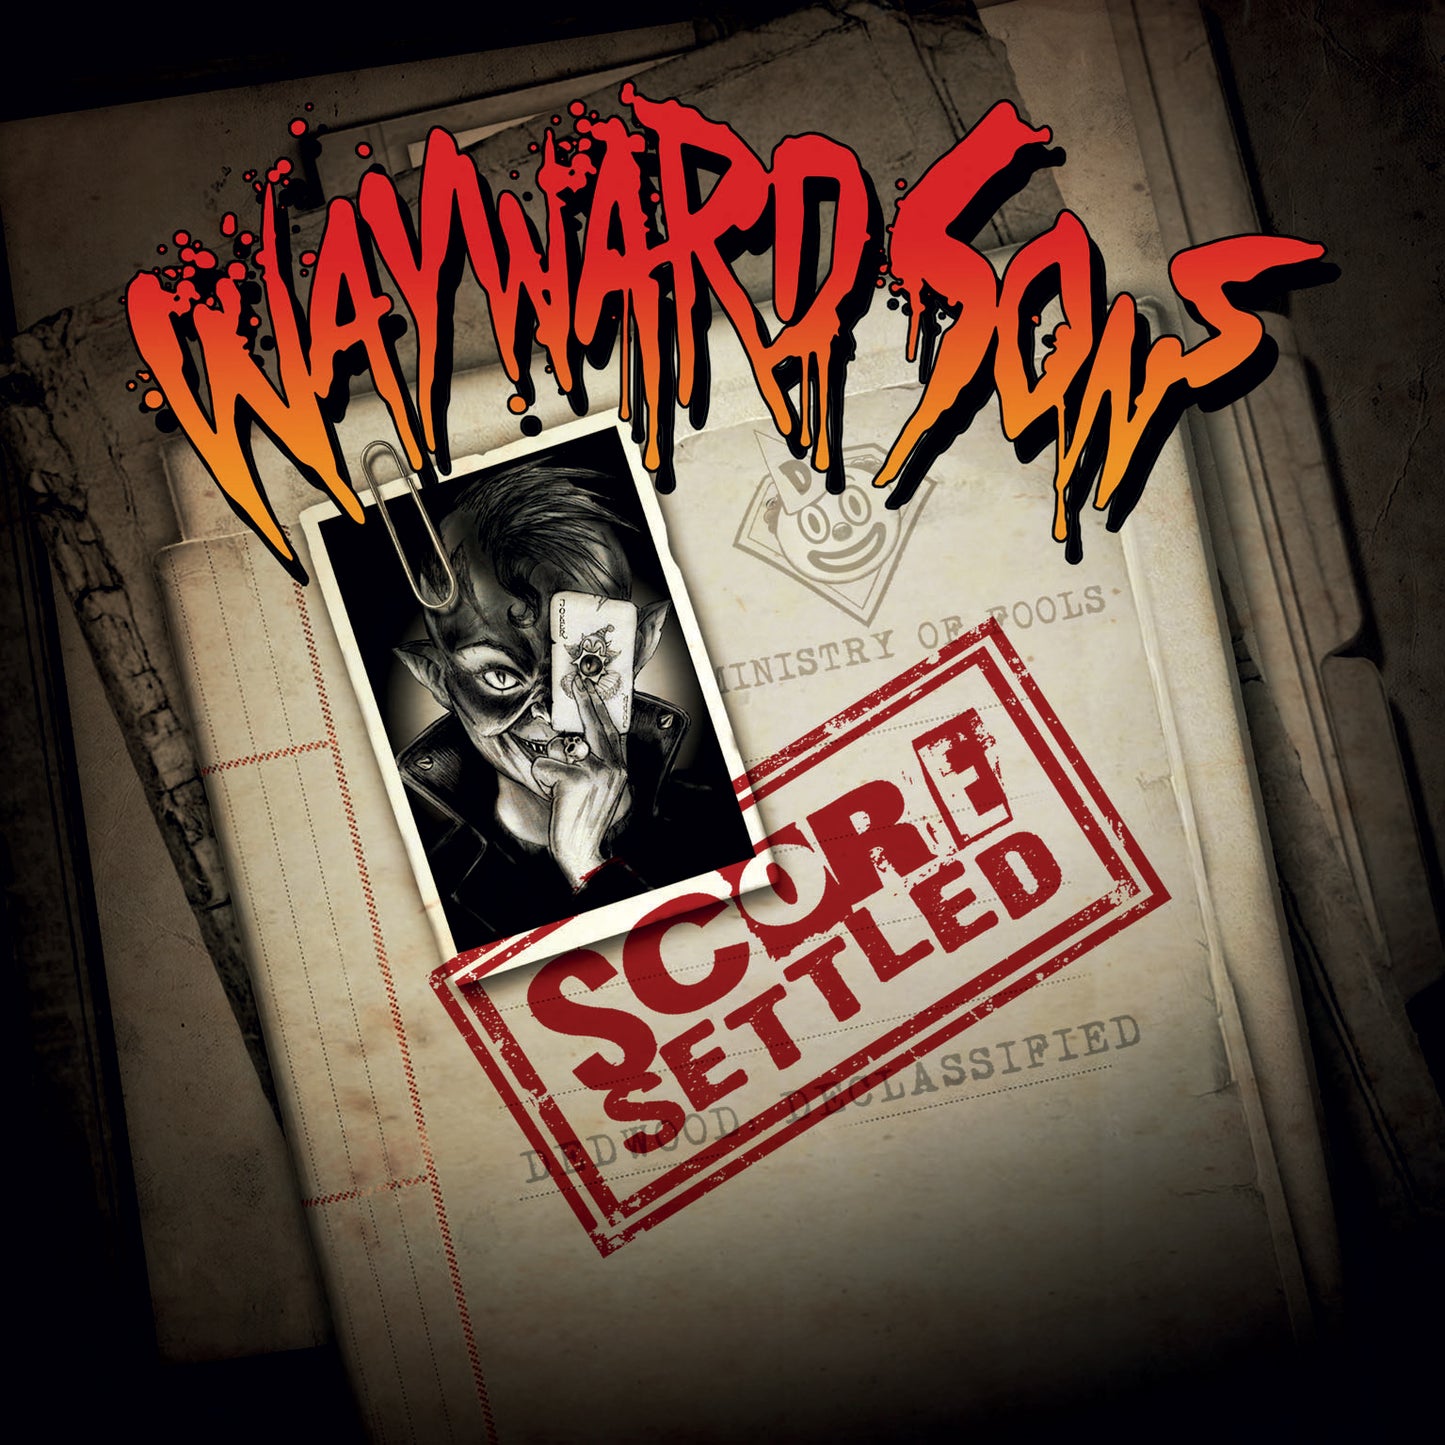 Wayward Sons - Score Settled CD Album